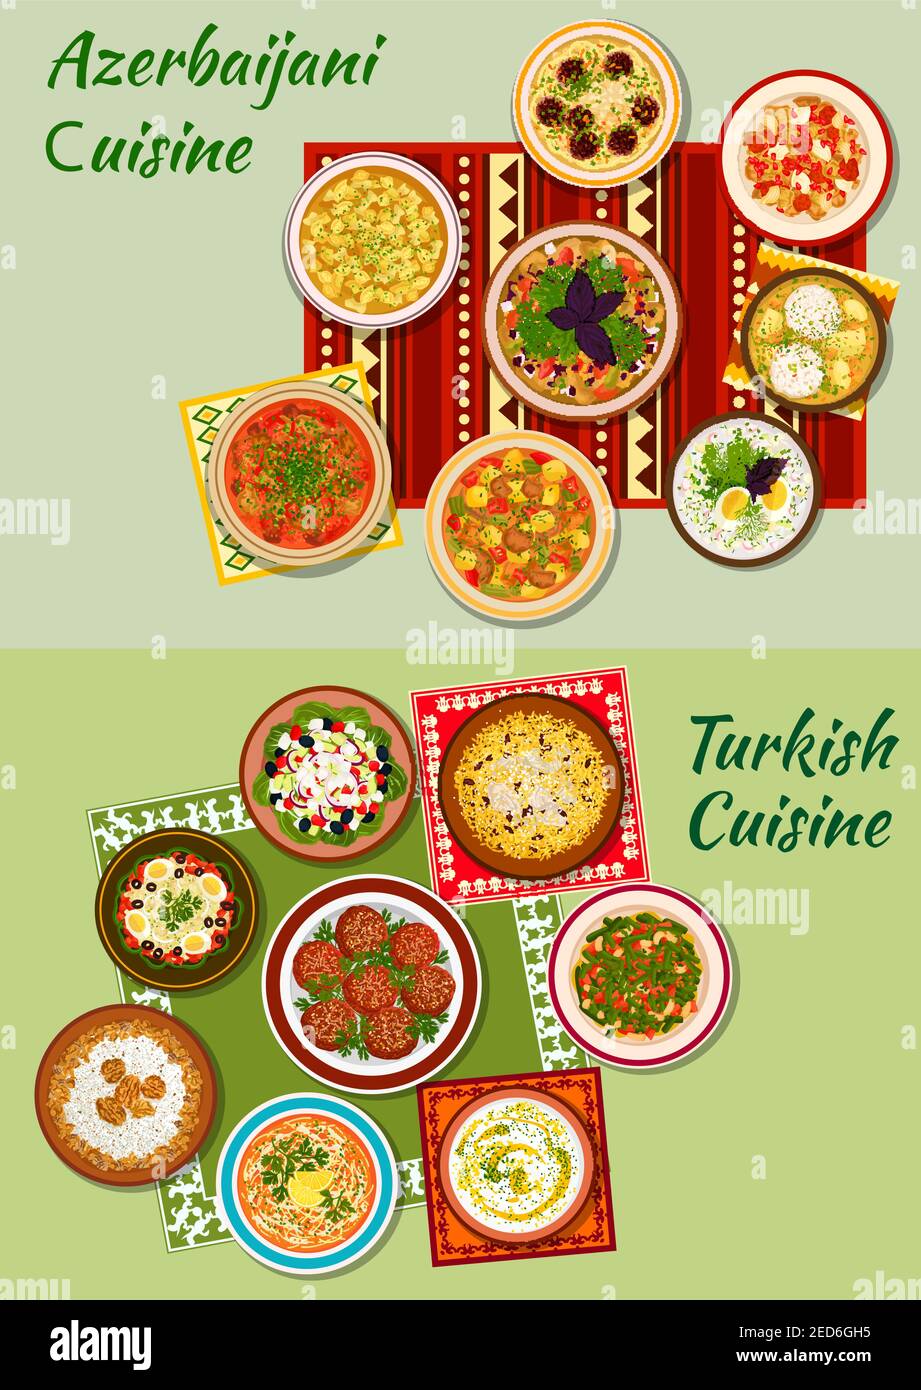 Cuisine turque et azerbaïdjanaise avec boulettes de viande et de poisson, salades de légumes et de haricots, pilaf, agneau et poulet bouillis, ragoût épais, viande et dumpeline Illustration de Vecteur